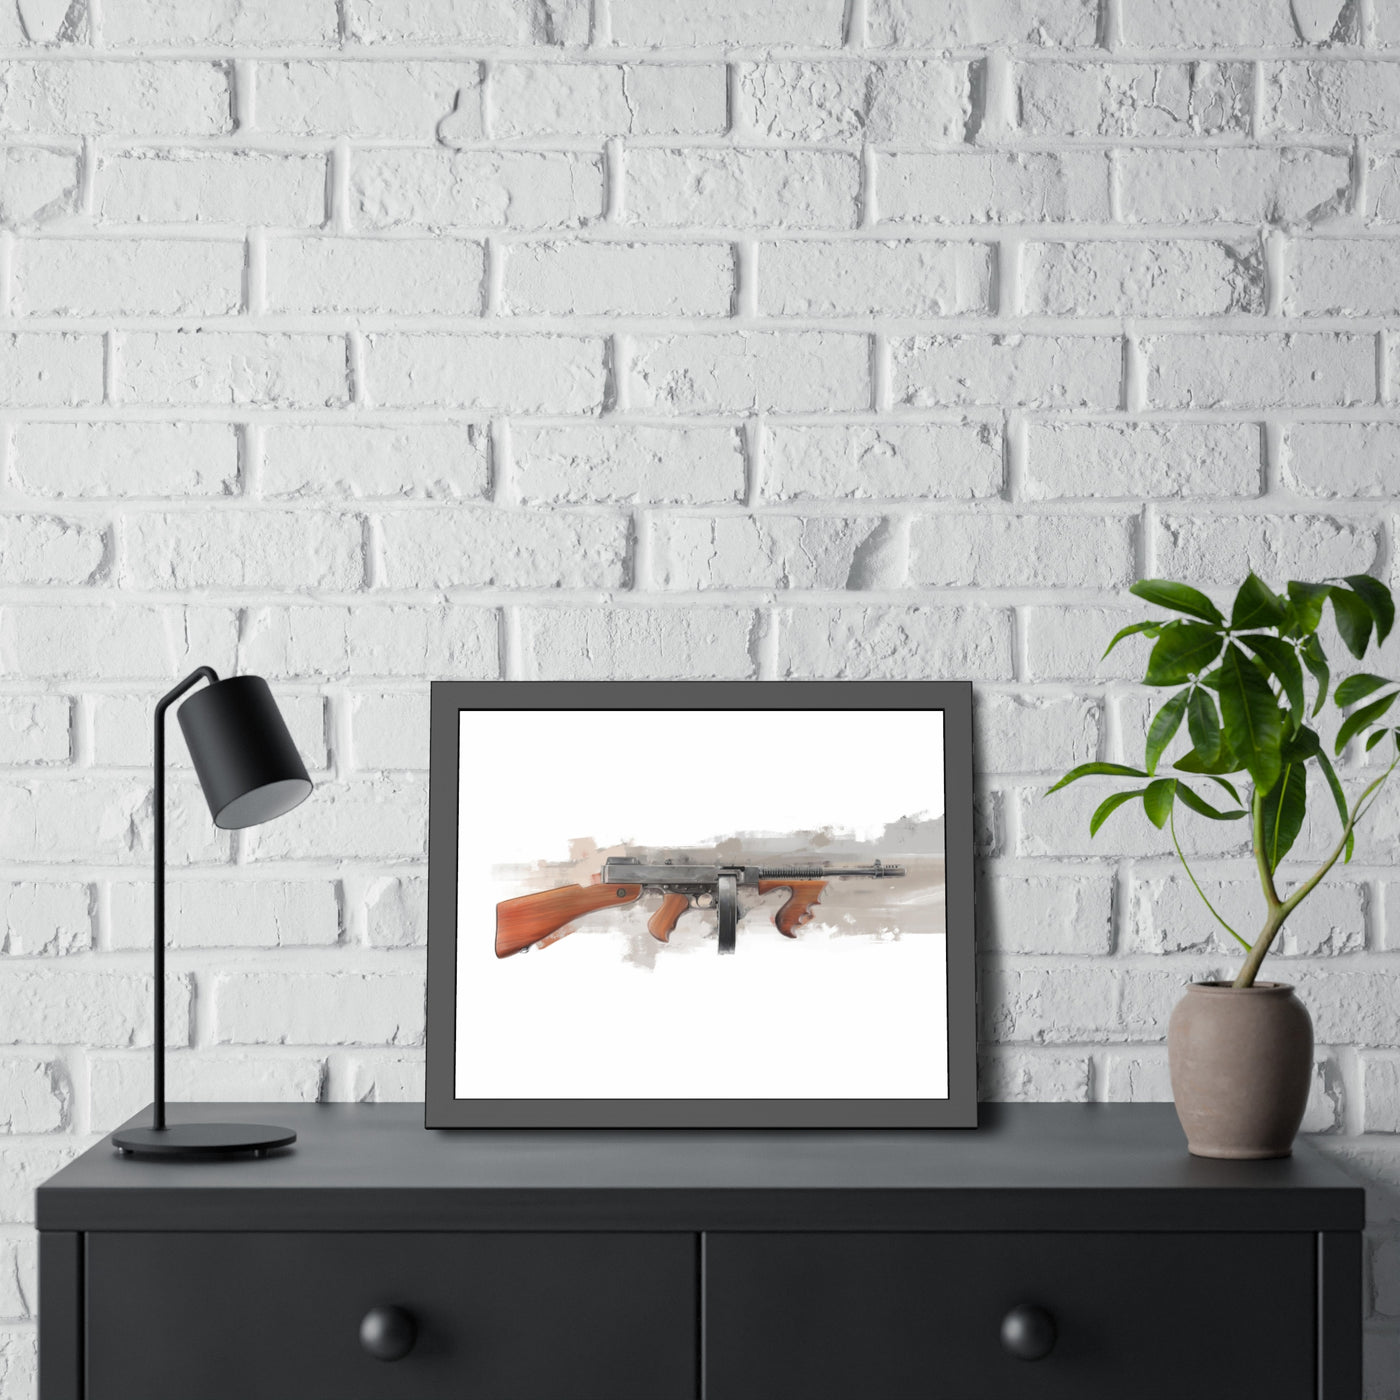 The “OG” Mobster Machine Gun - Black Frame - Value Collection